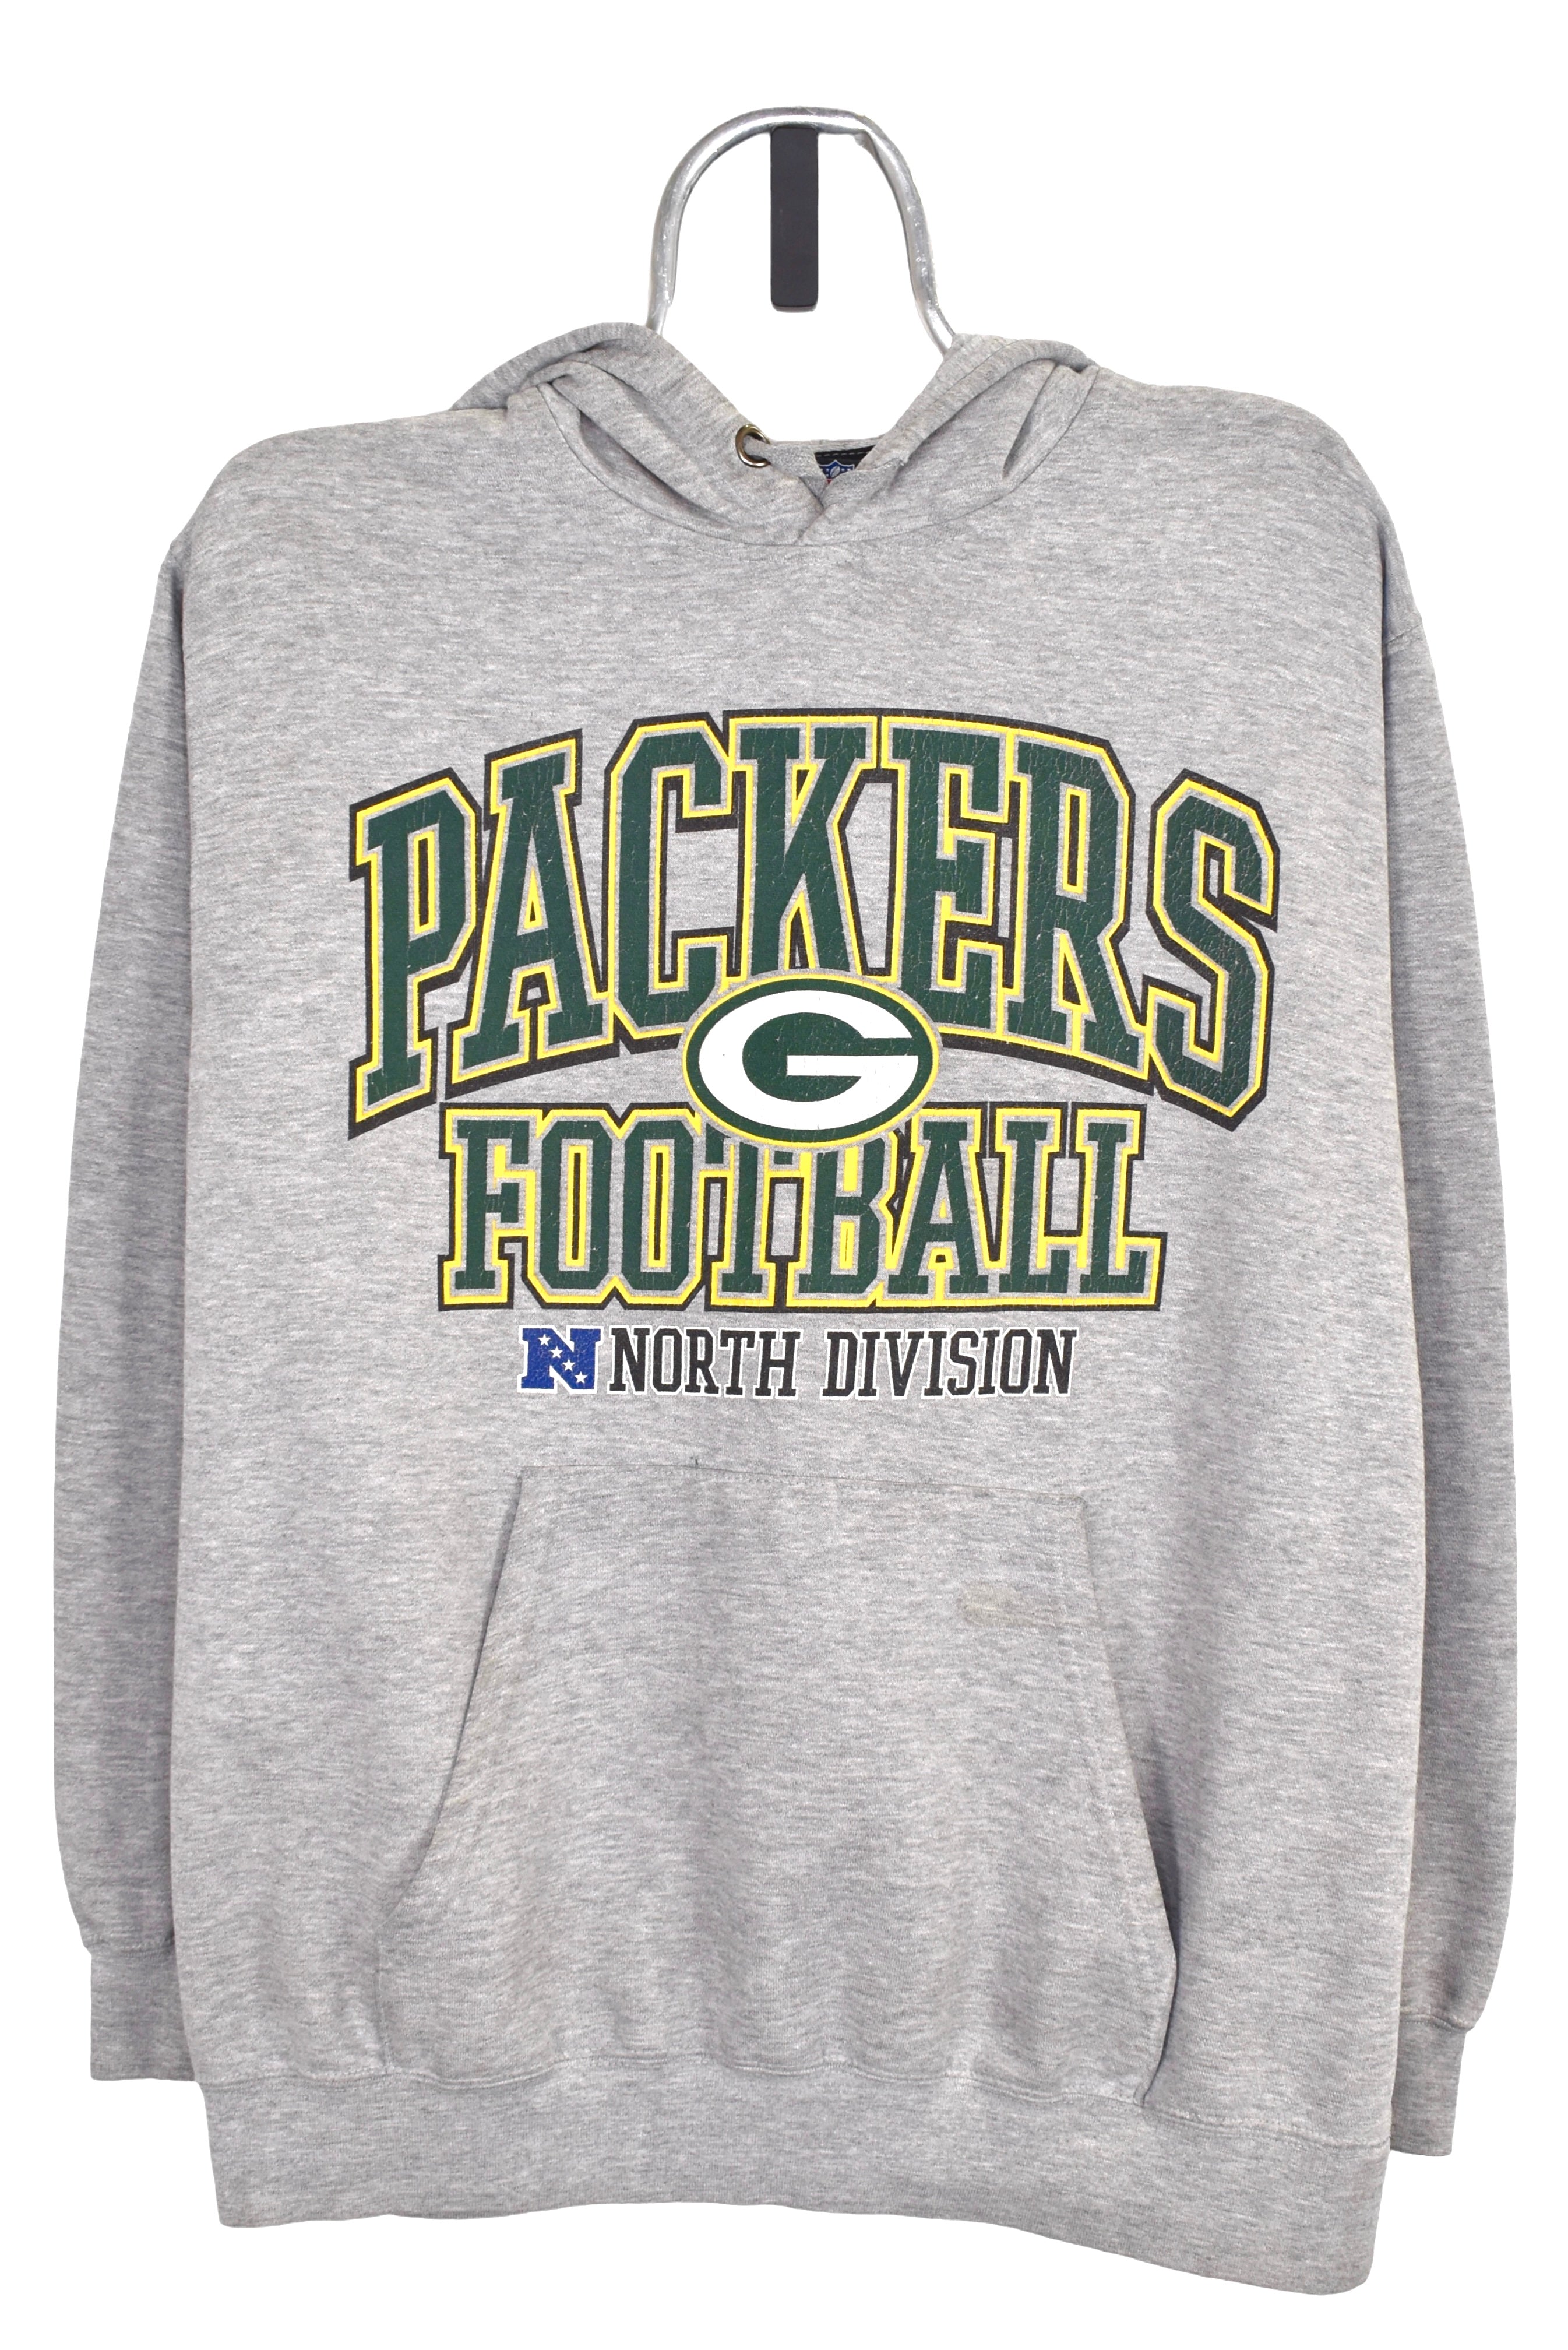 Vintage Green Bay Packers hoodie Large, grey NFL graphic sweatshirt